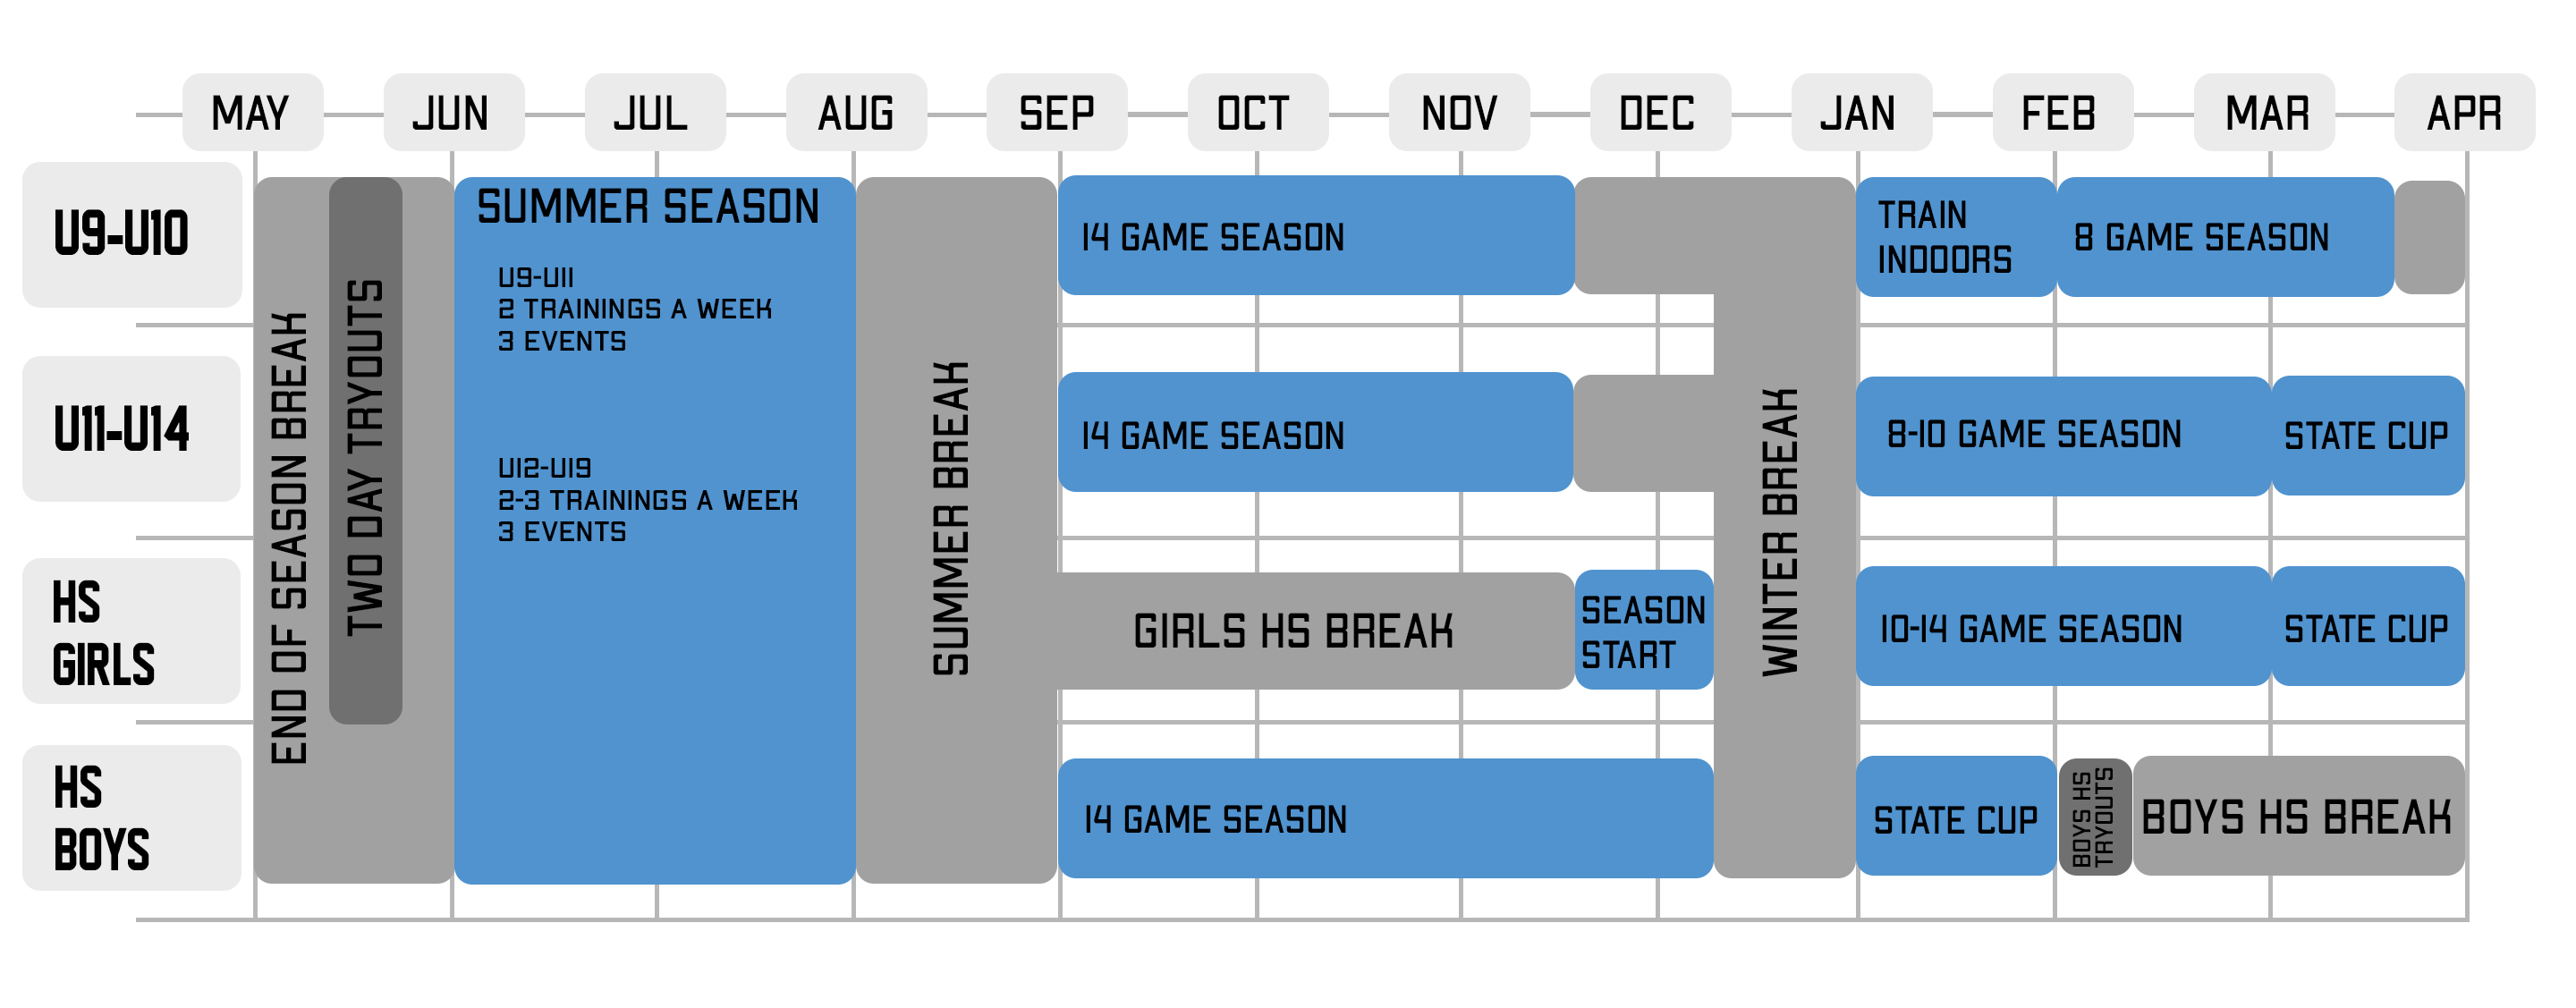 Season Timeline